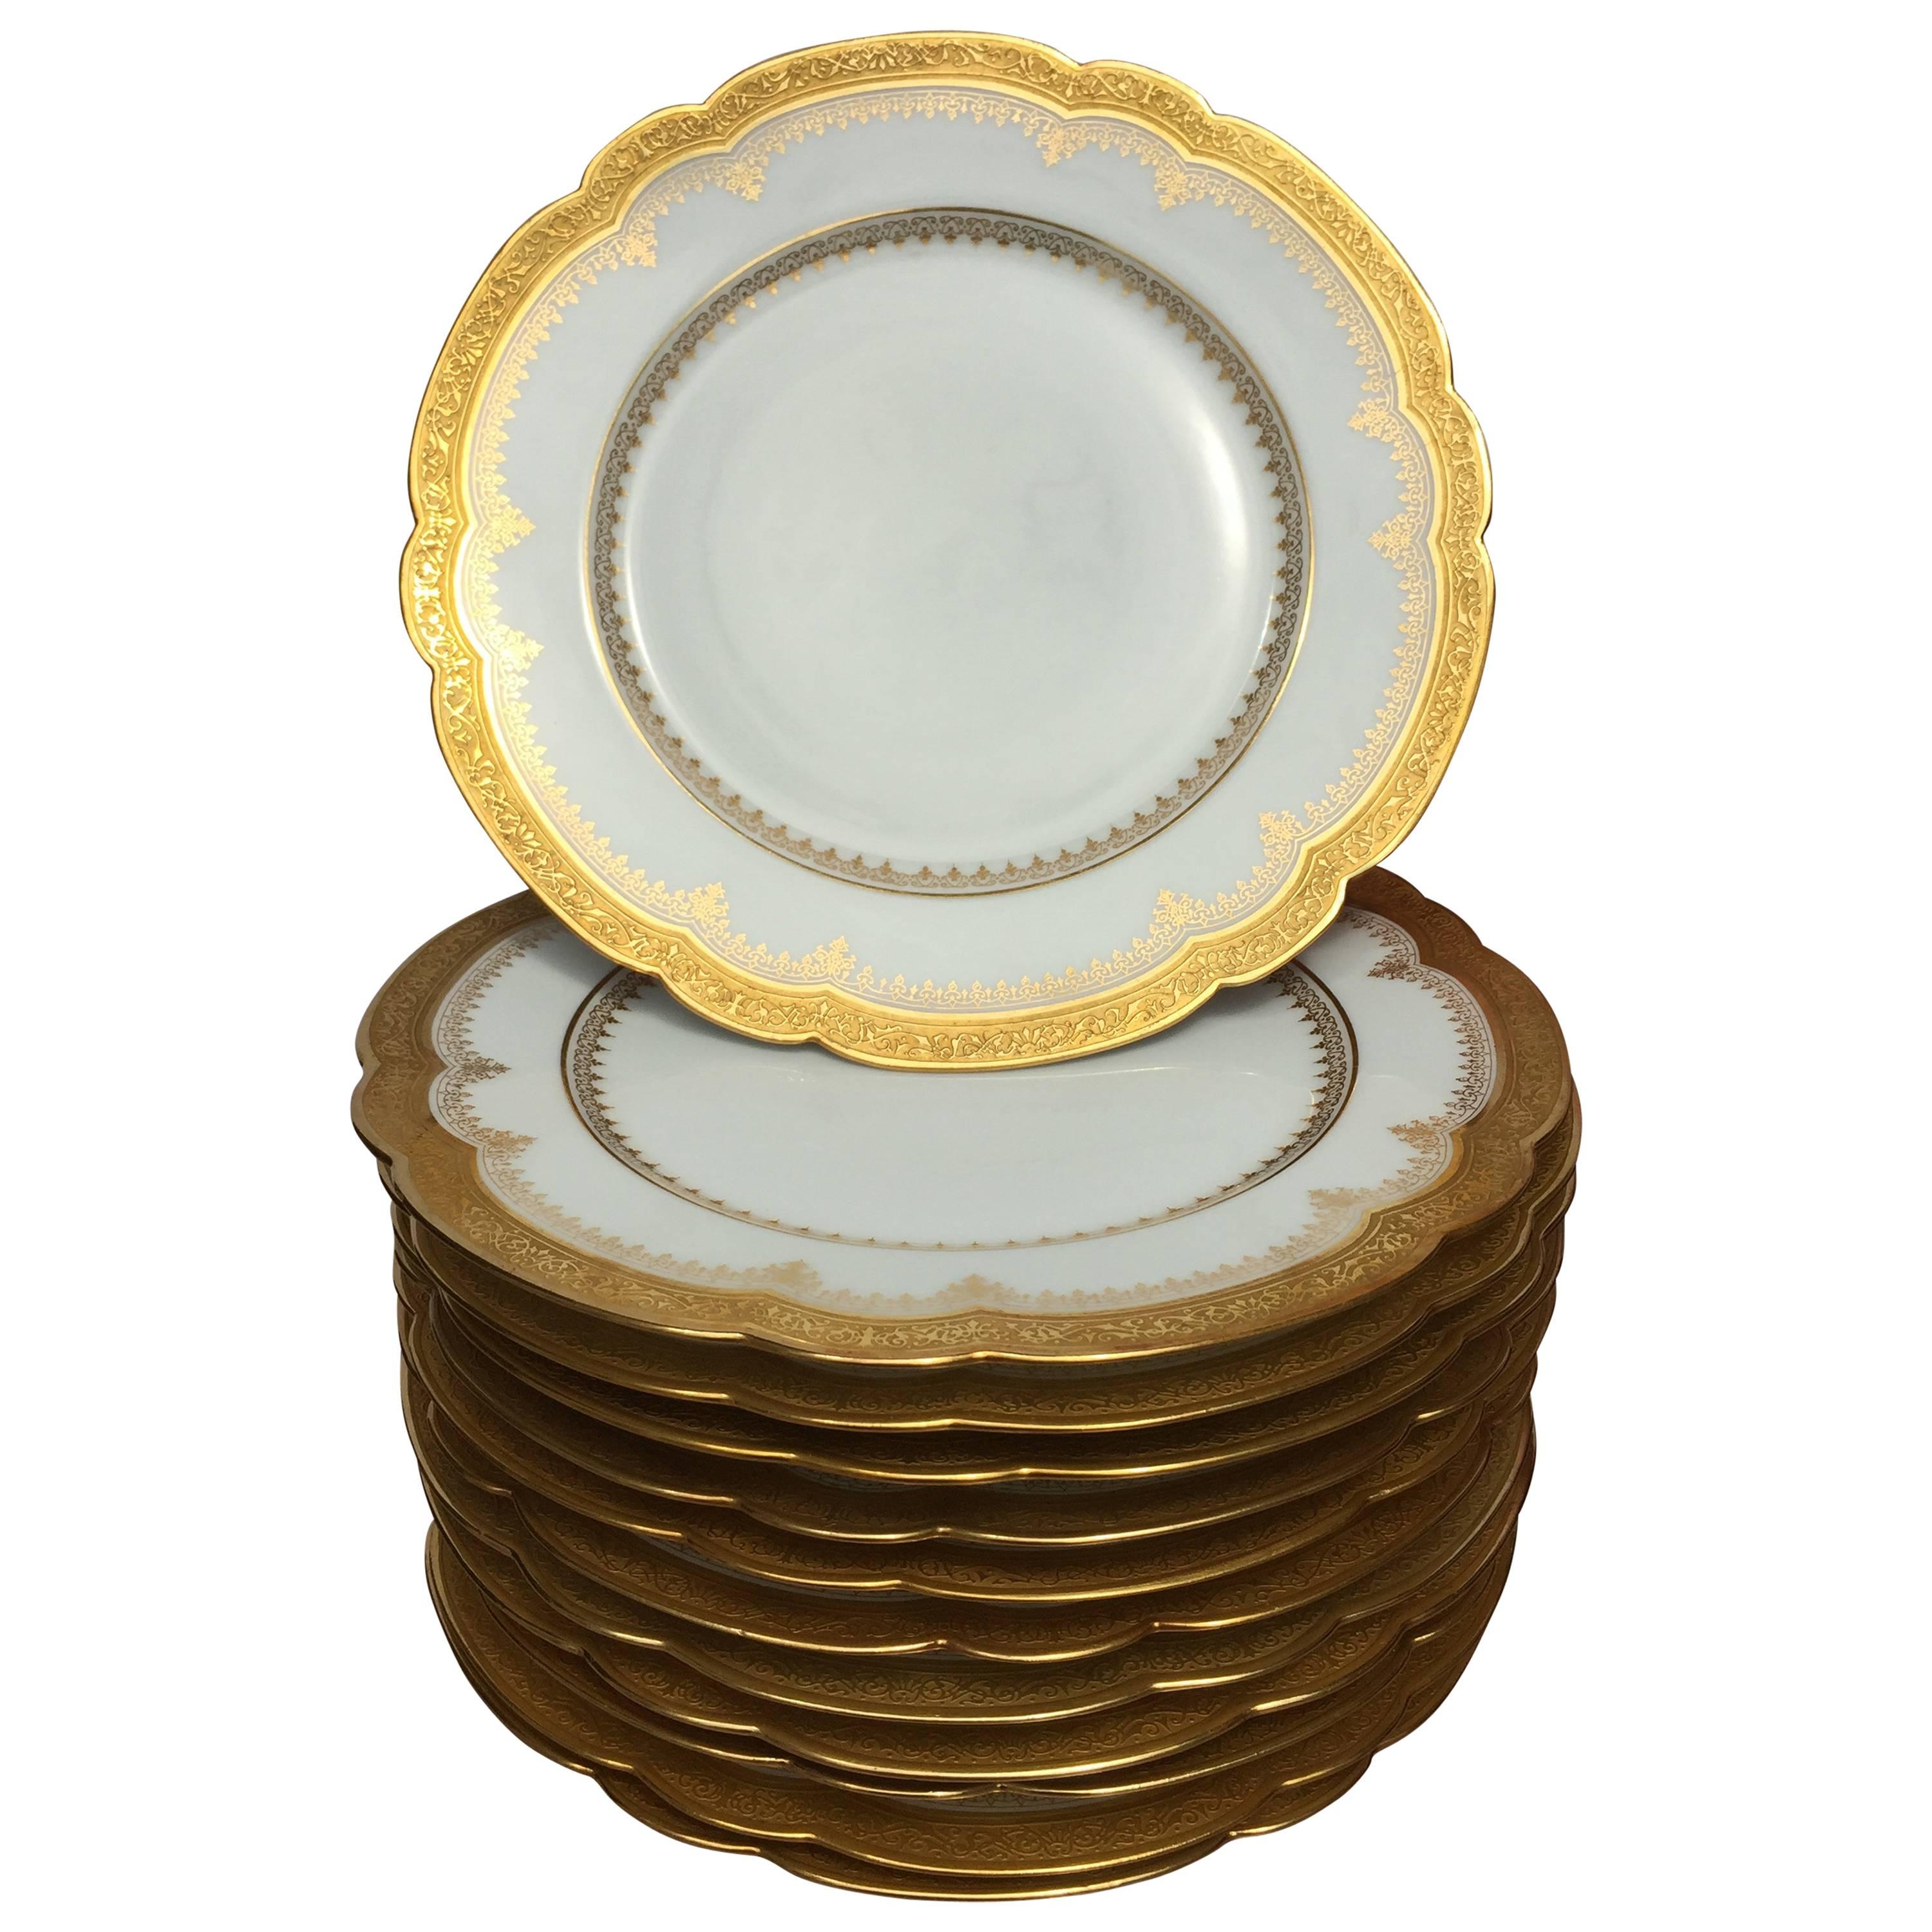 12 Porcelain Plates with 24 Karat Gold Border